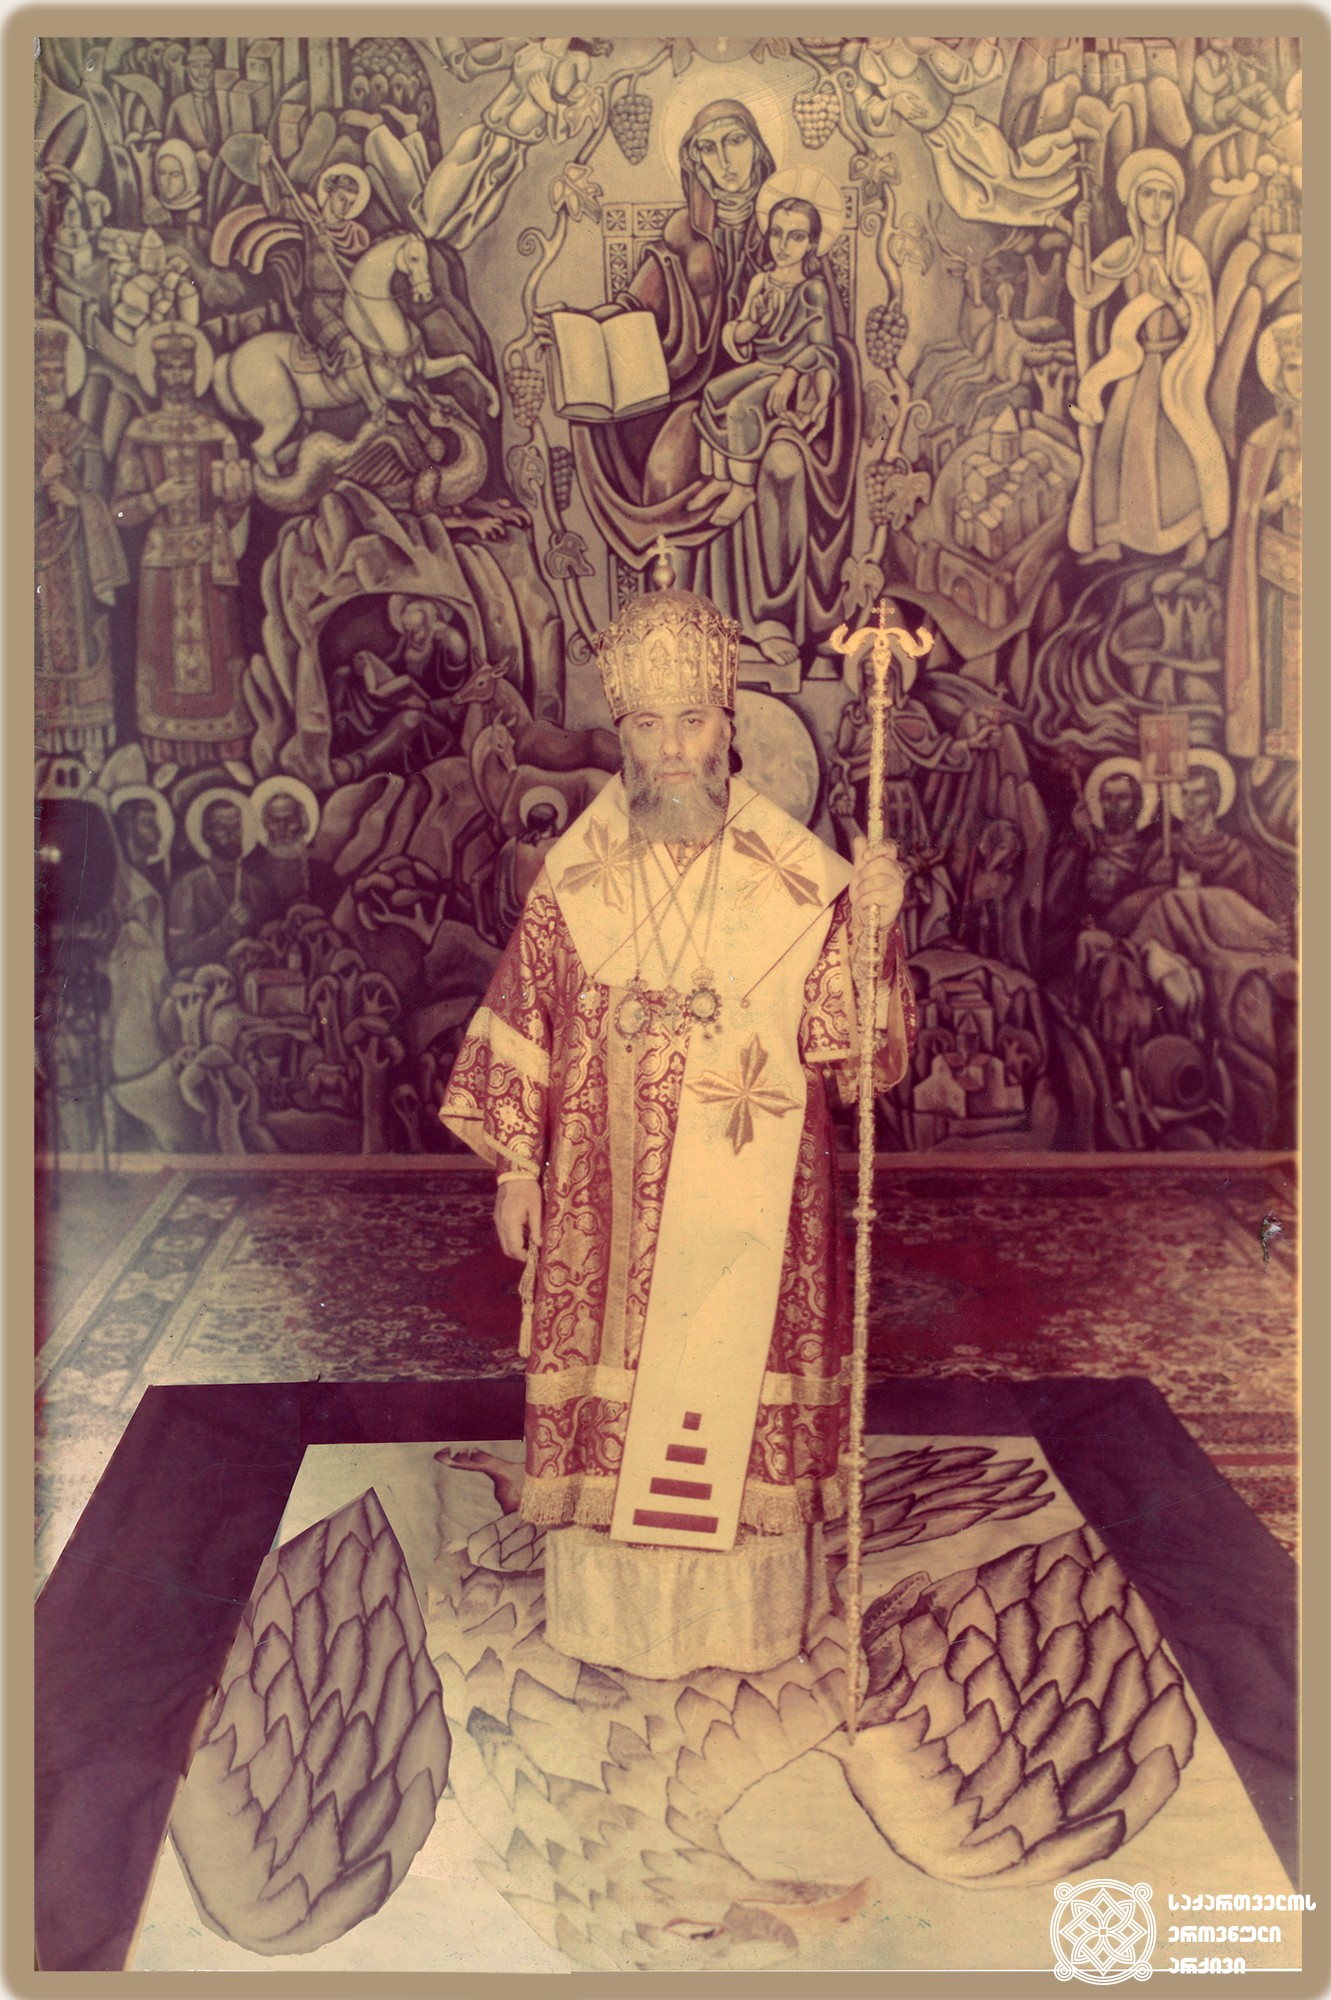 ილია II - სრულიად საქართველოს კათოლიკოს-პატრიარქი. <br>
თბილისი, 1978 წელი. <br>

Ilia II - Catholicos-Patriarch of All Georgia. <br>
Tbilisi, 1978.